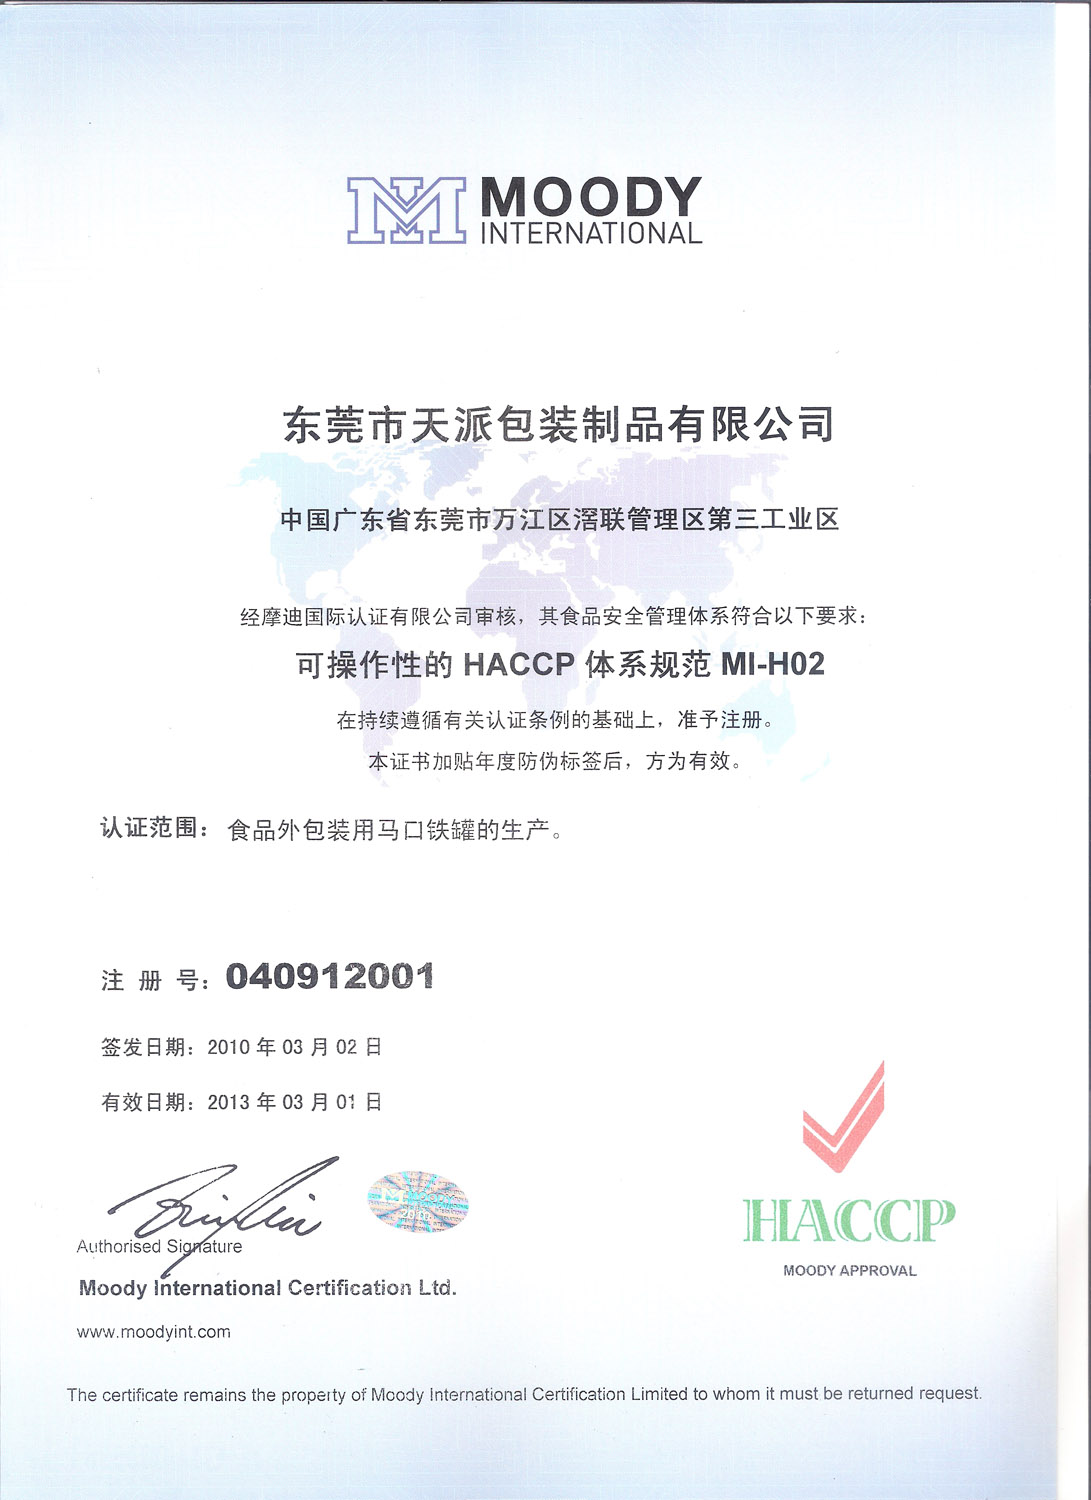 天派包装女娲神草茶铁盒HACCP认证